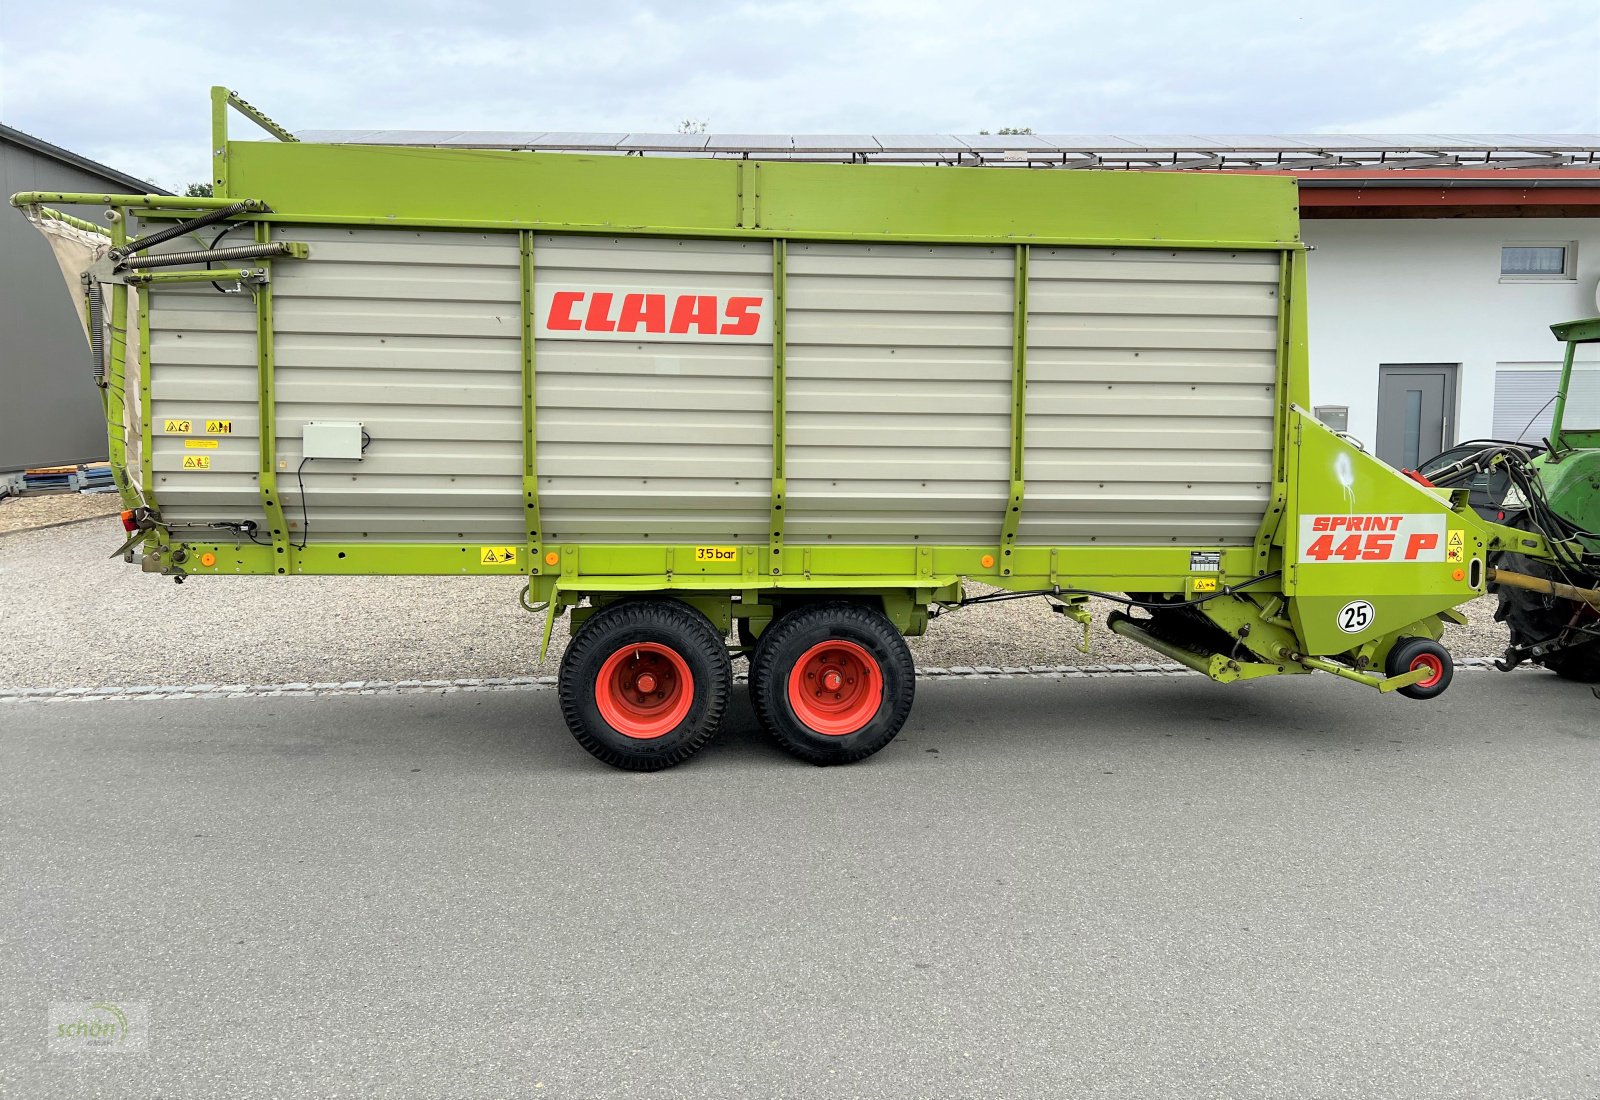 Ladewagen des Typs CLAAS Sprint 445 P mit Druckluftbremse - aus erster Hand - 40 km/h Zulassung möglich, Gebrauchtmaschine in Burgrieden (Bild 11)